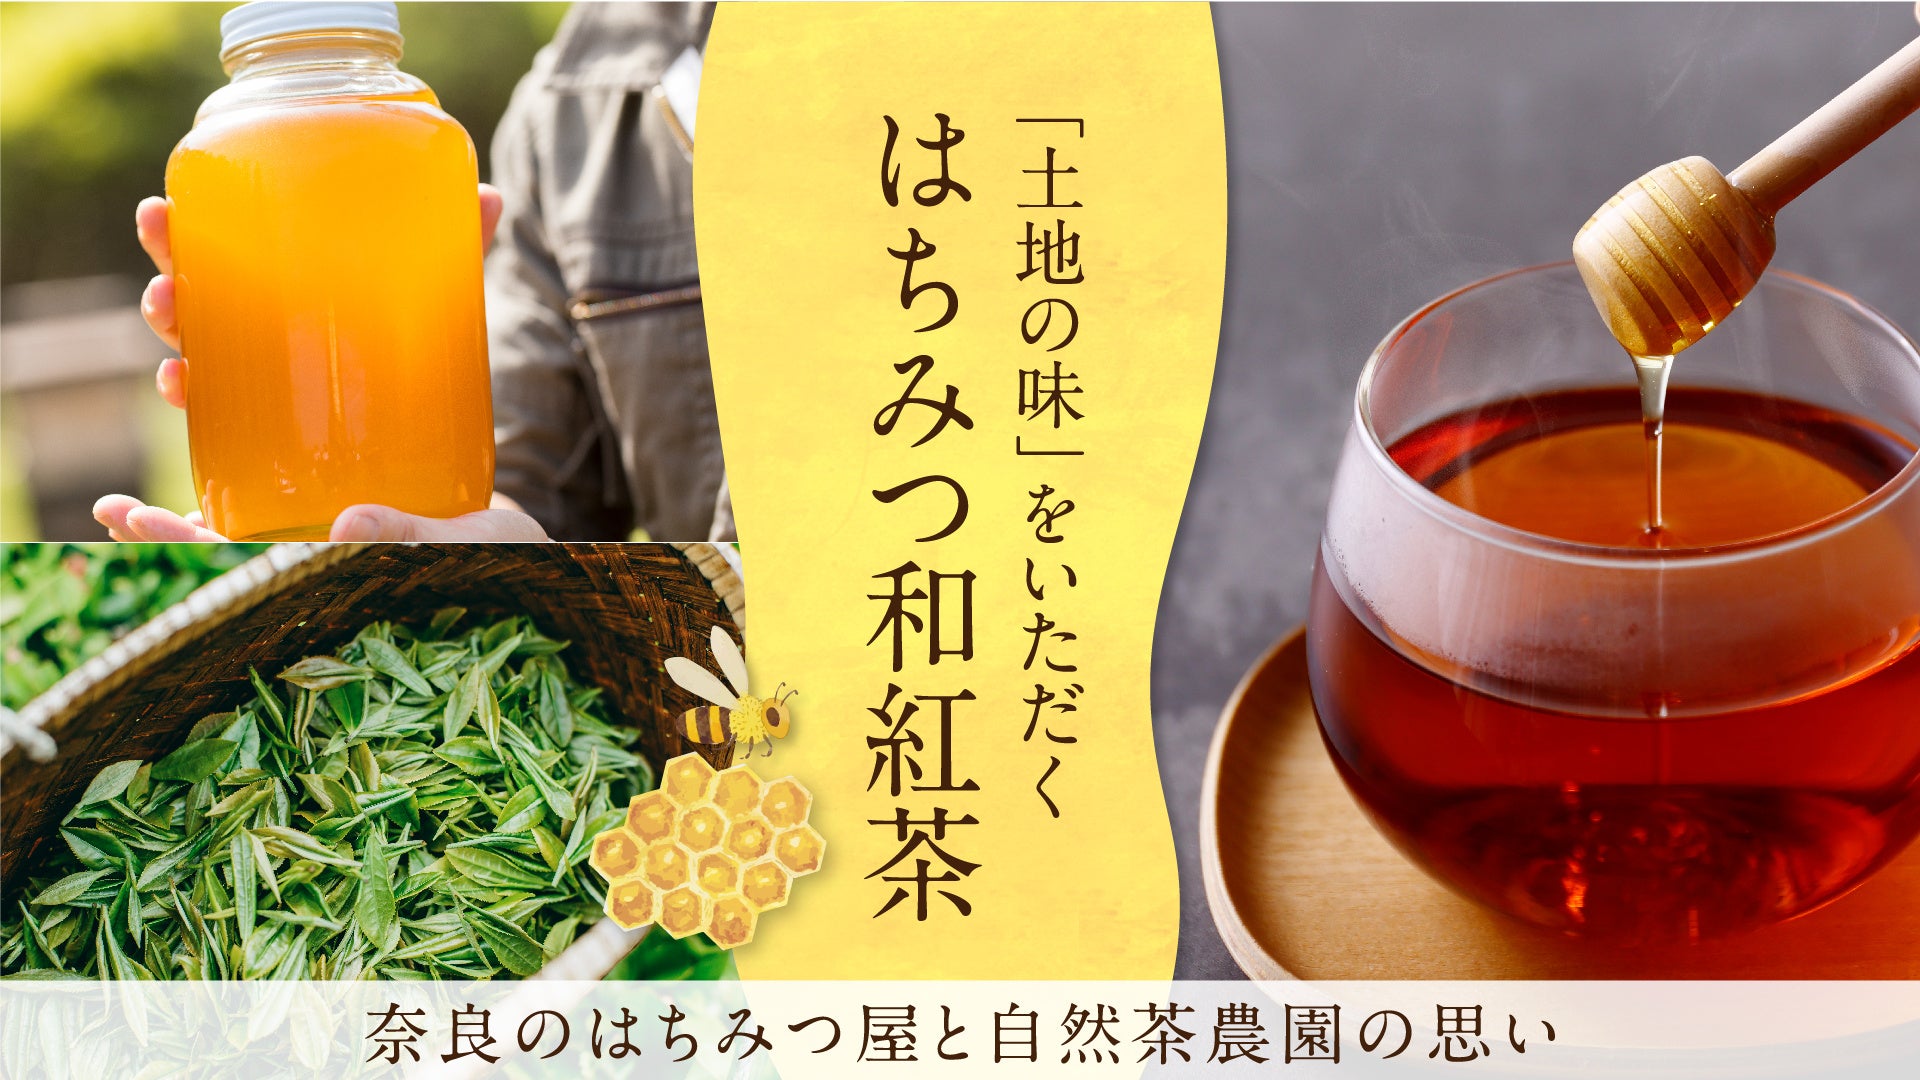 matsukiyo LABの「サステナブルロカボライン」から低糖質でも食べ応え十分な“濃厚味”の新フレーバー「パスタスナック」2種　5月11日より販売開始